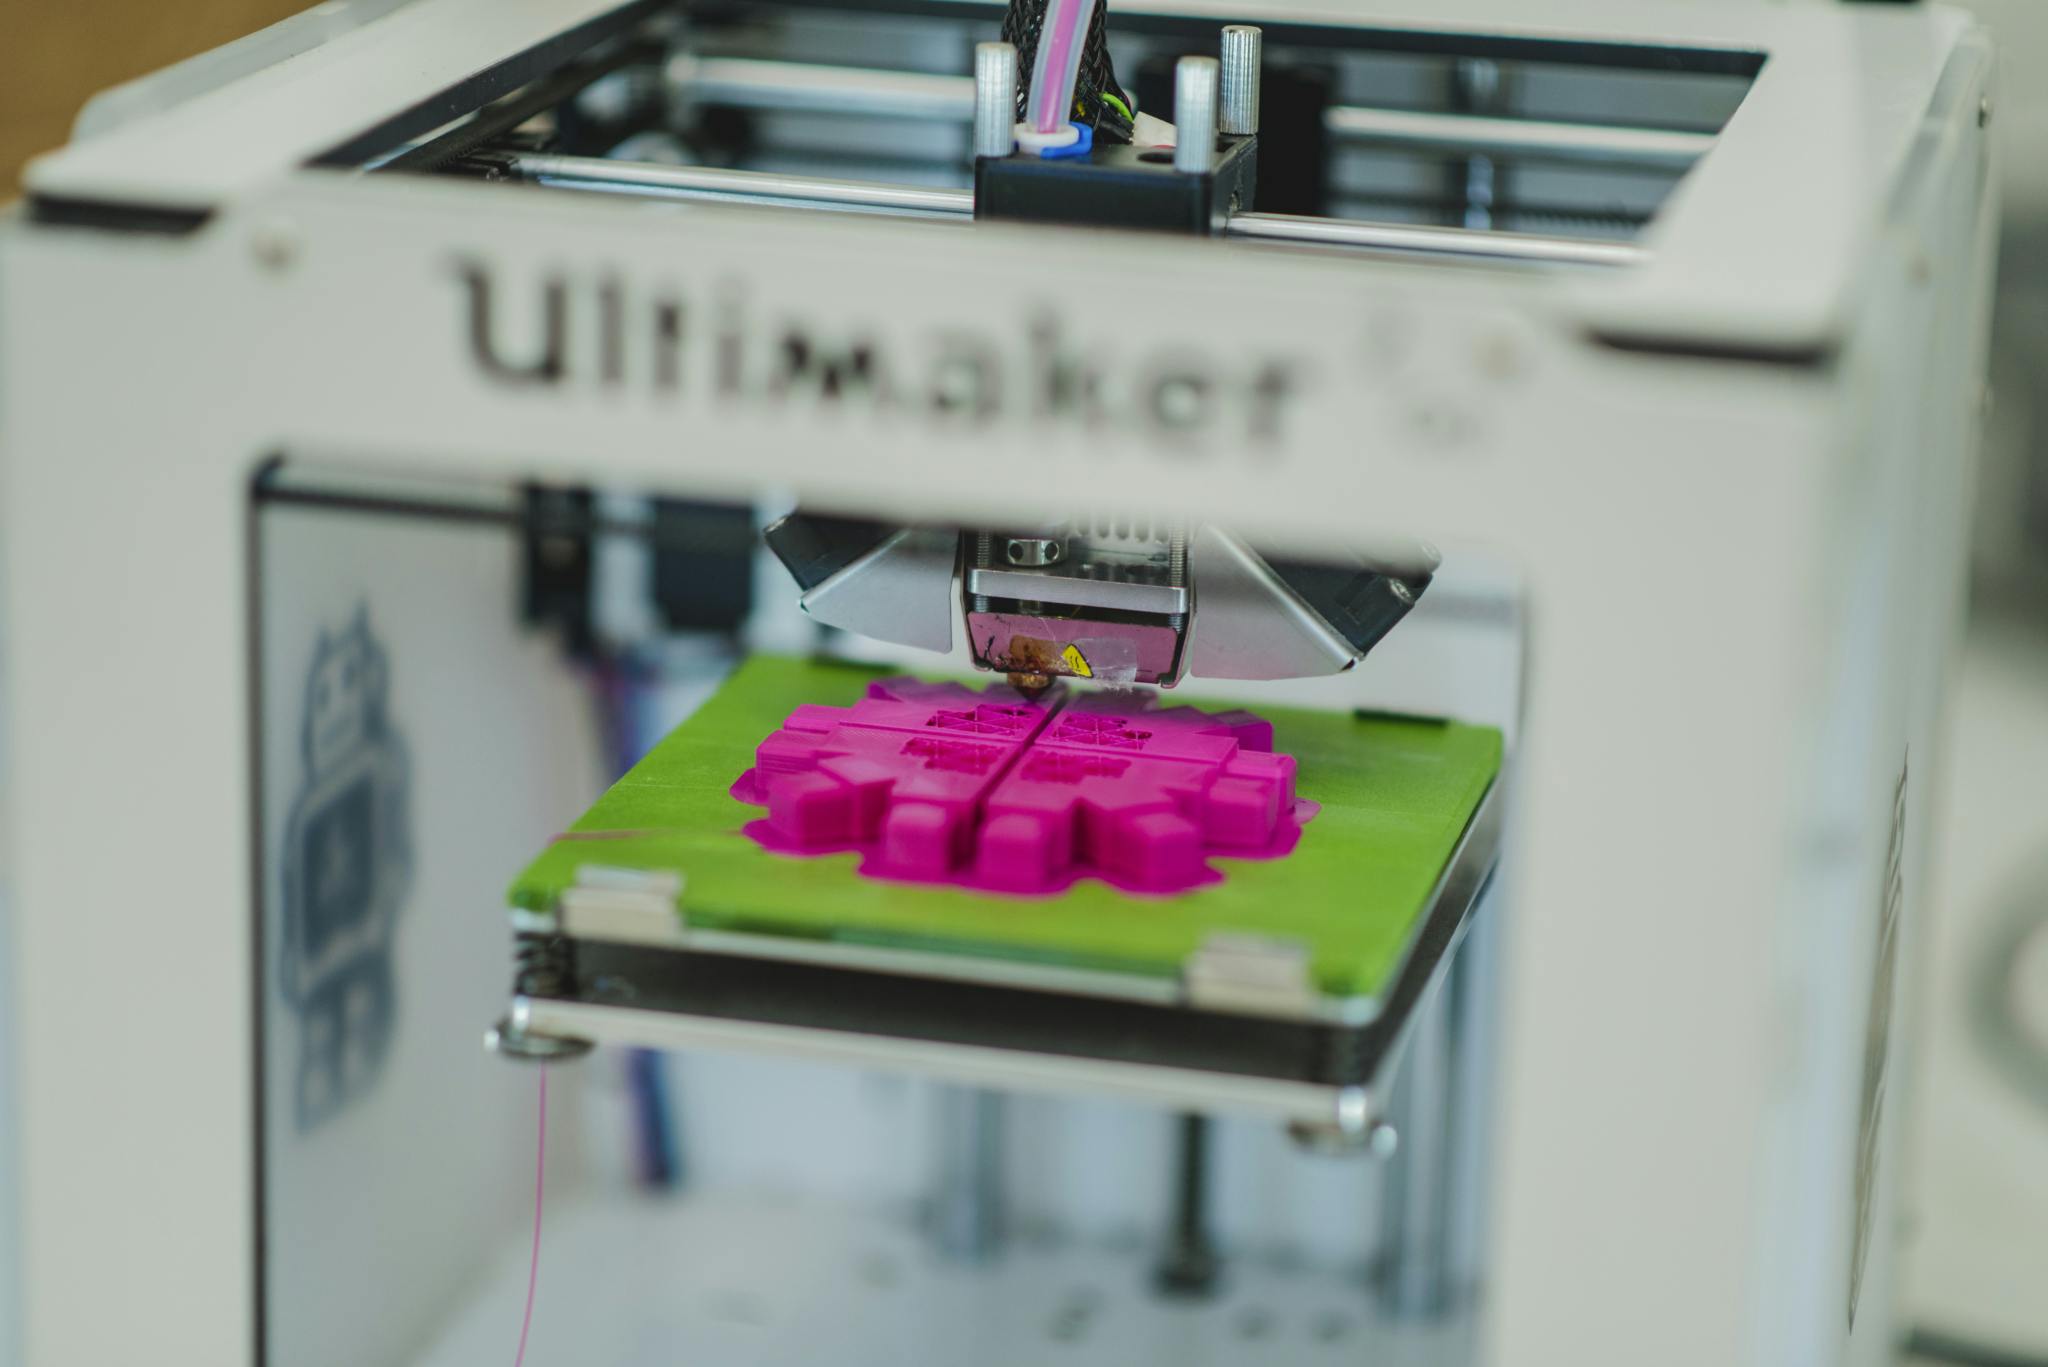 An Ultimaker 3D printer prints a neon pink shape on a green platform